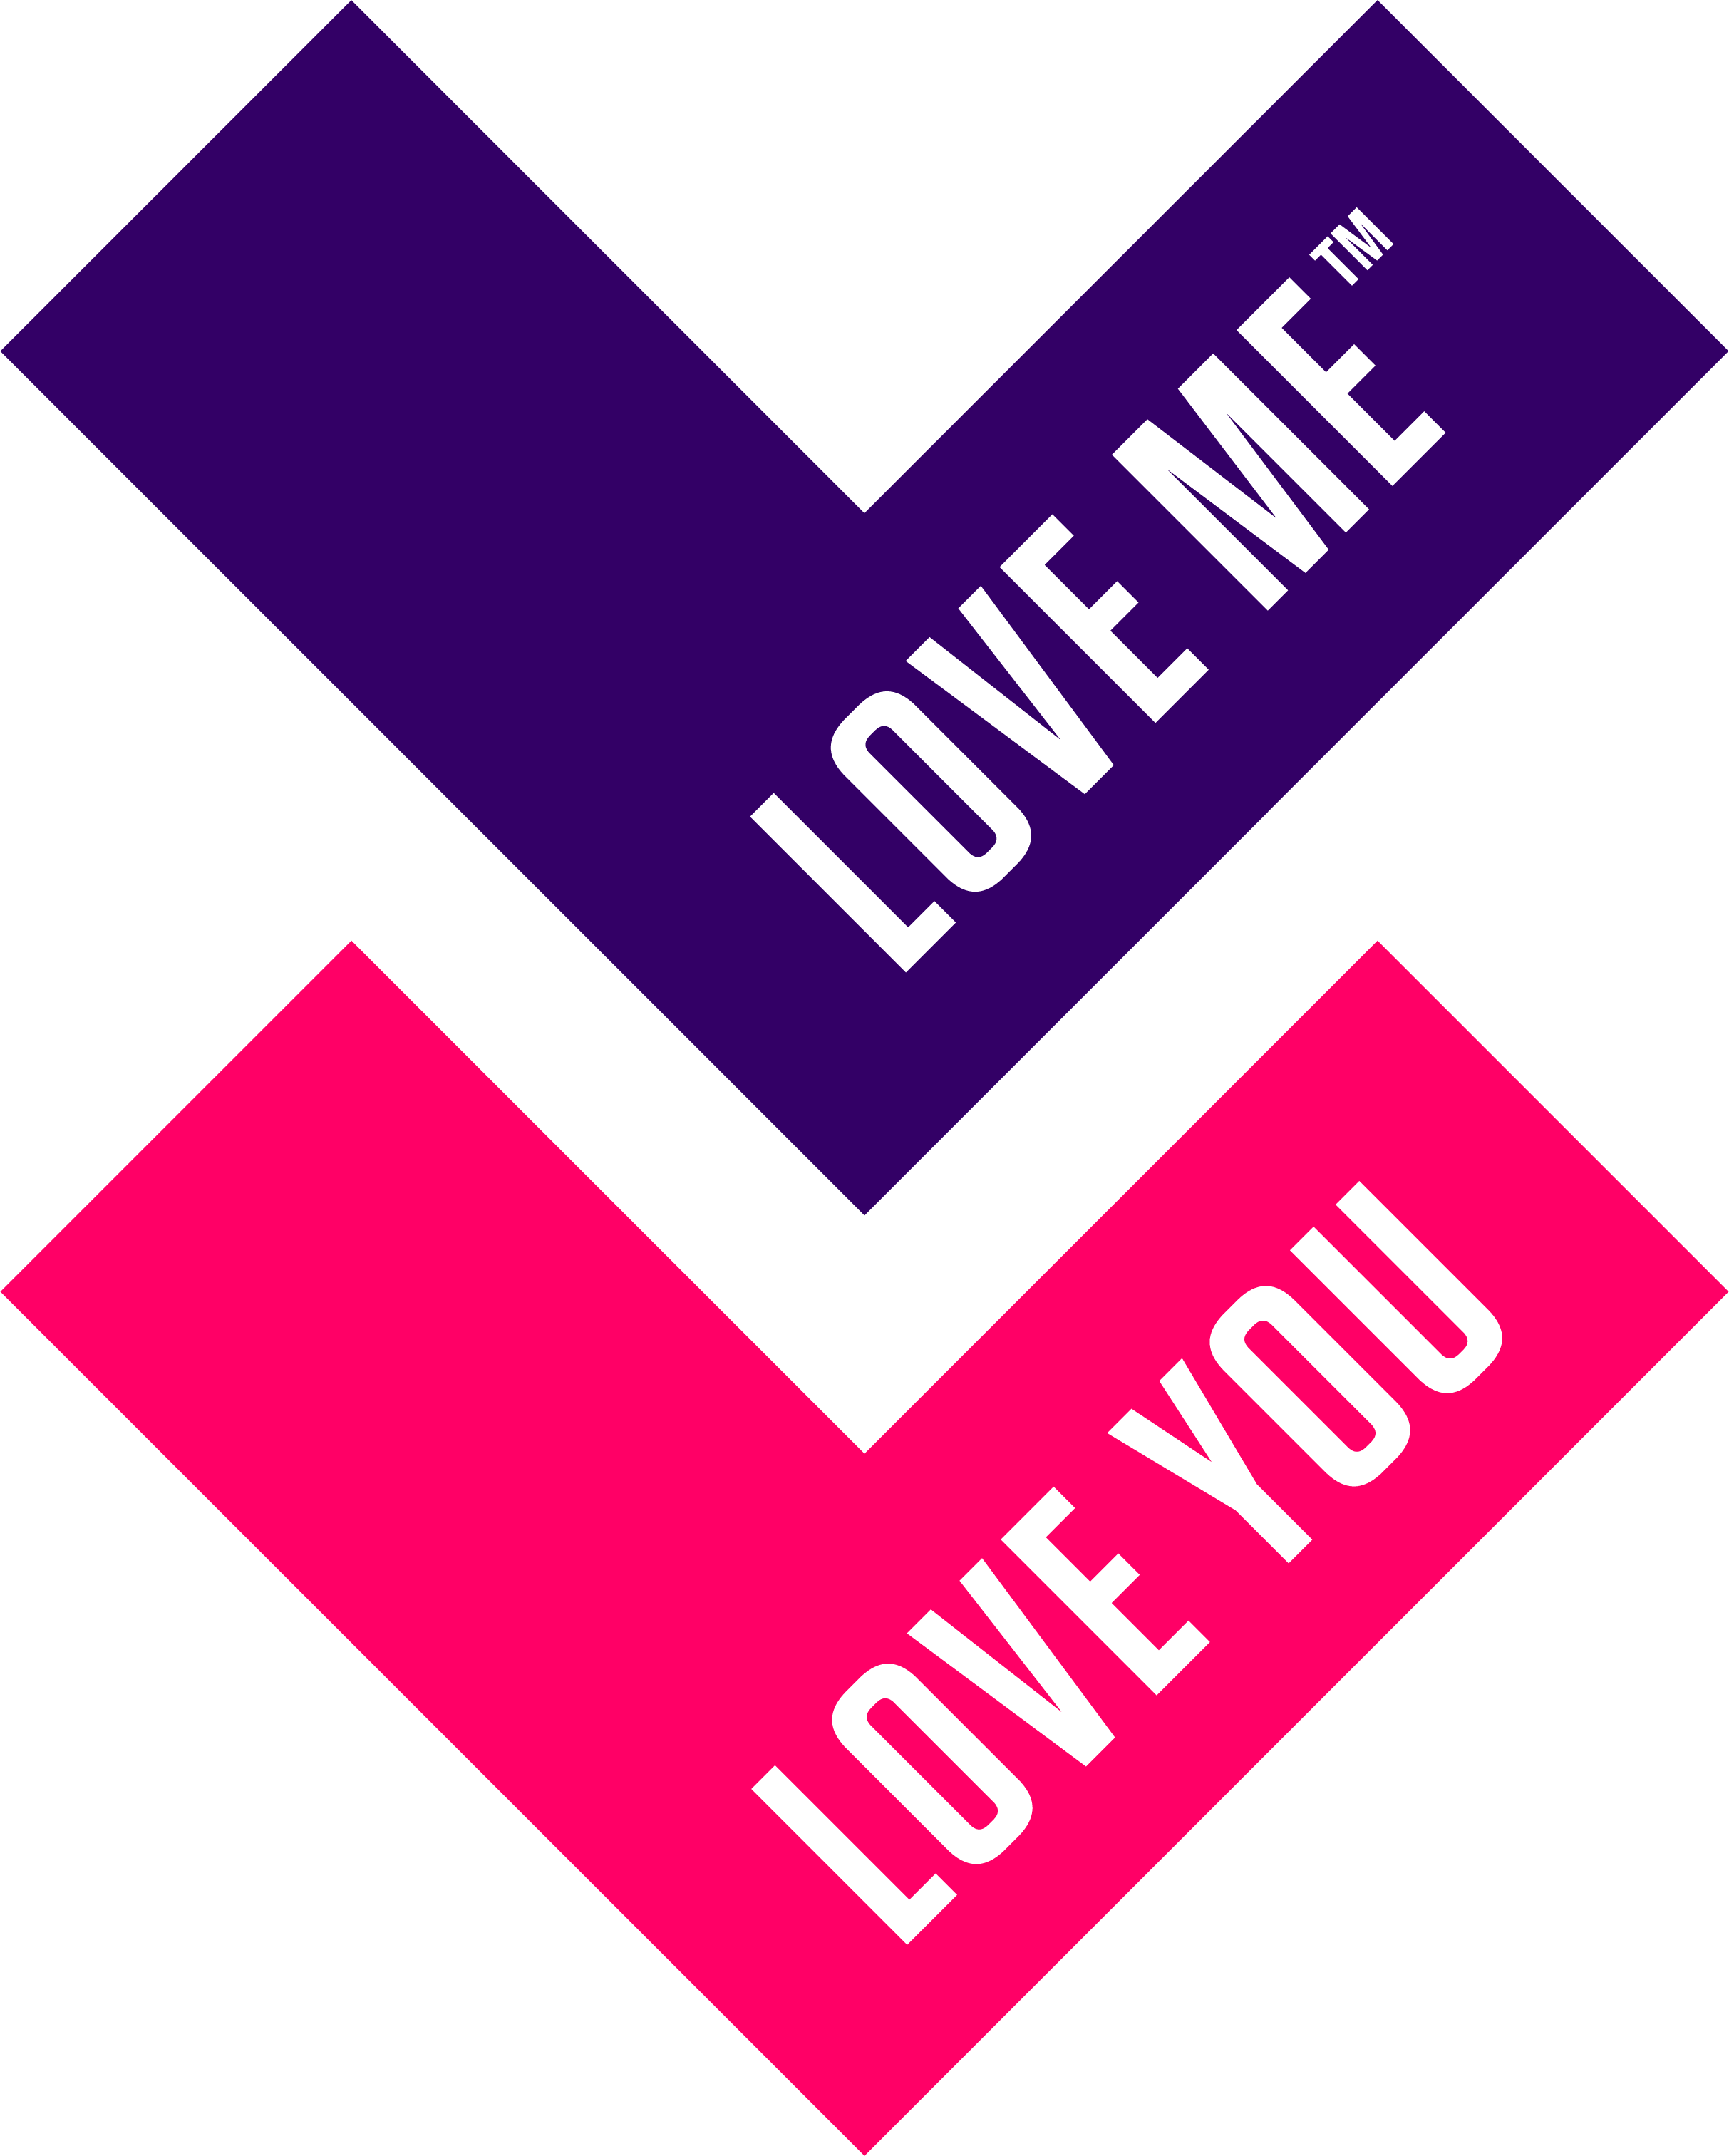 I Love Me Logo - Love Me Love You Foundation in Mind Australia